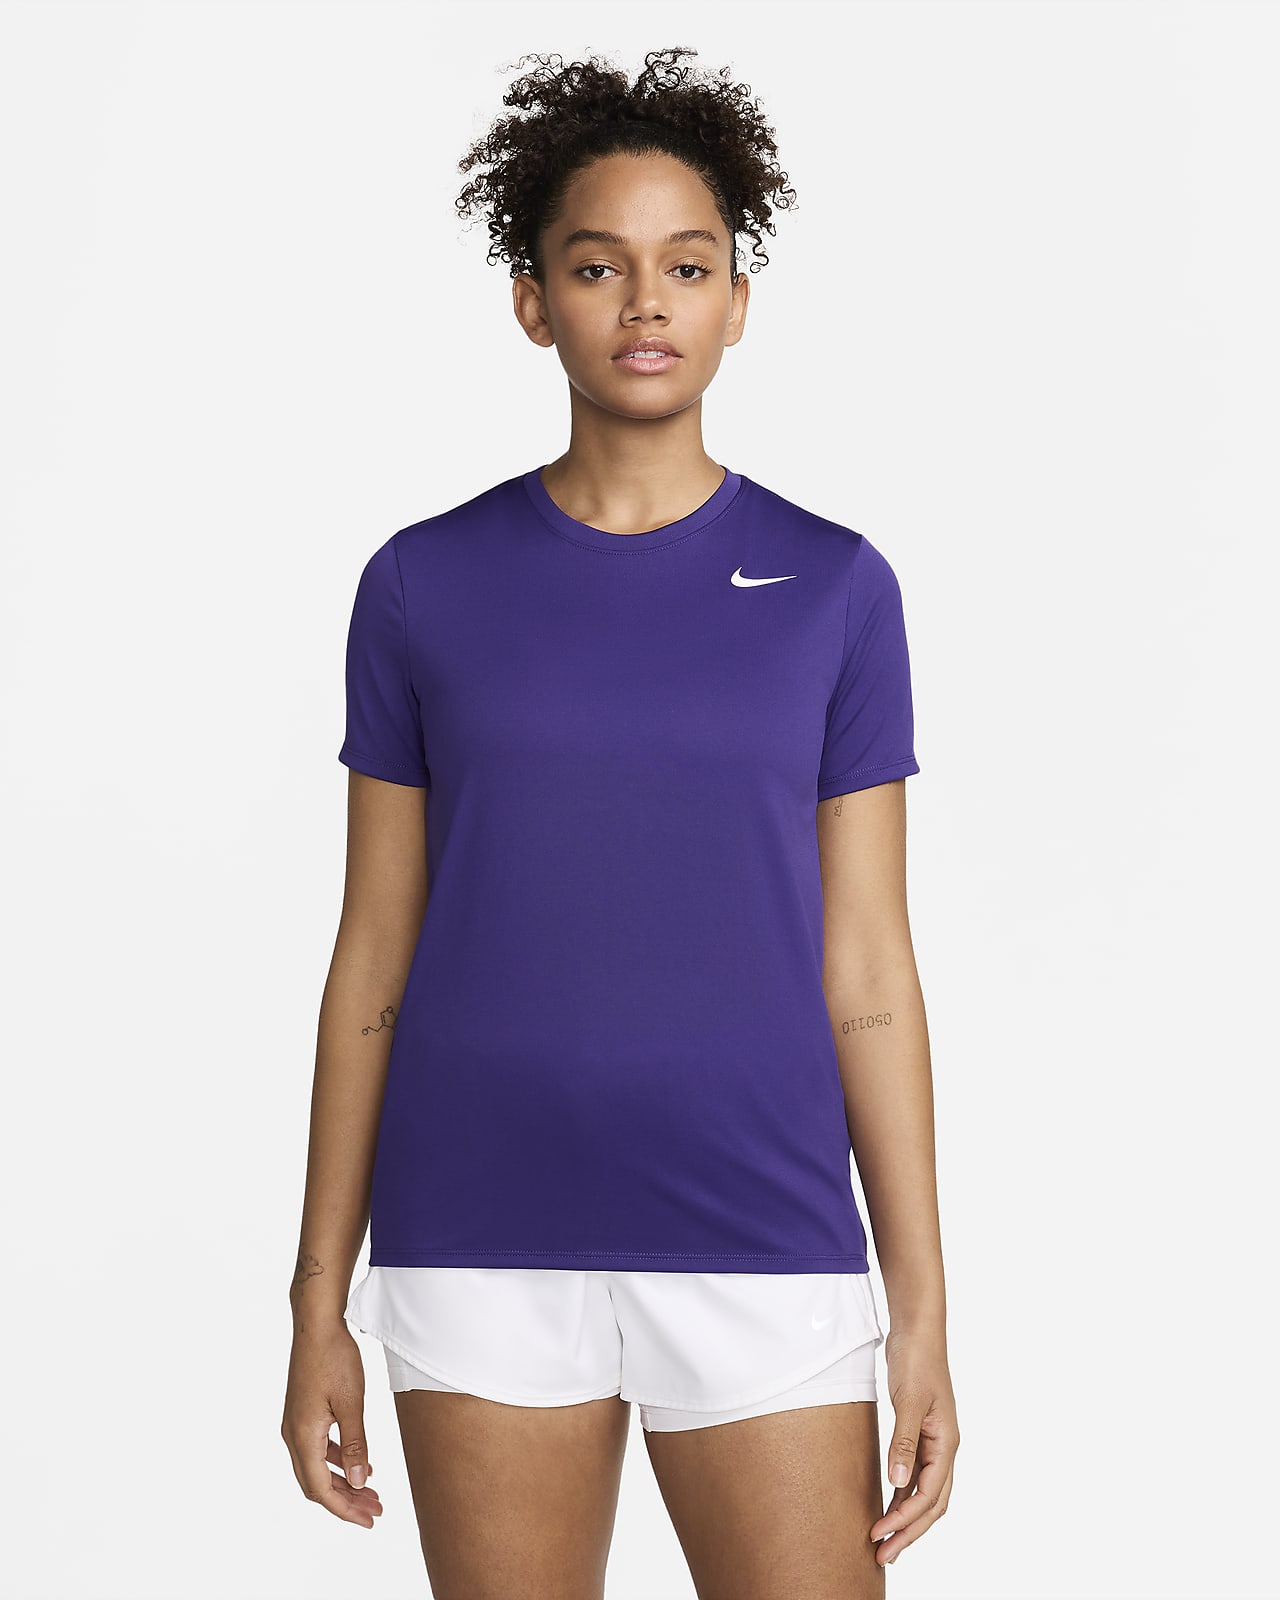 Playera para mujer Nike Dri-FIT